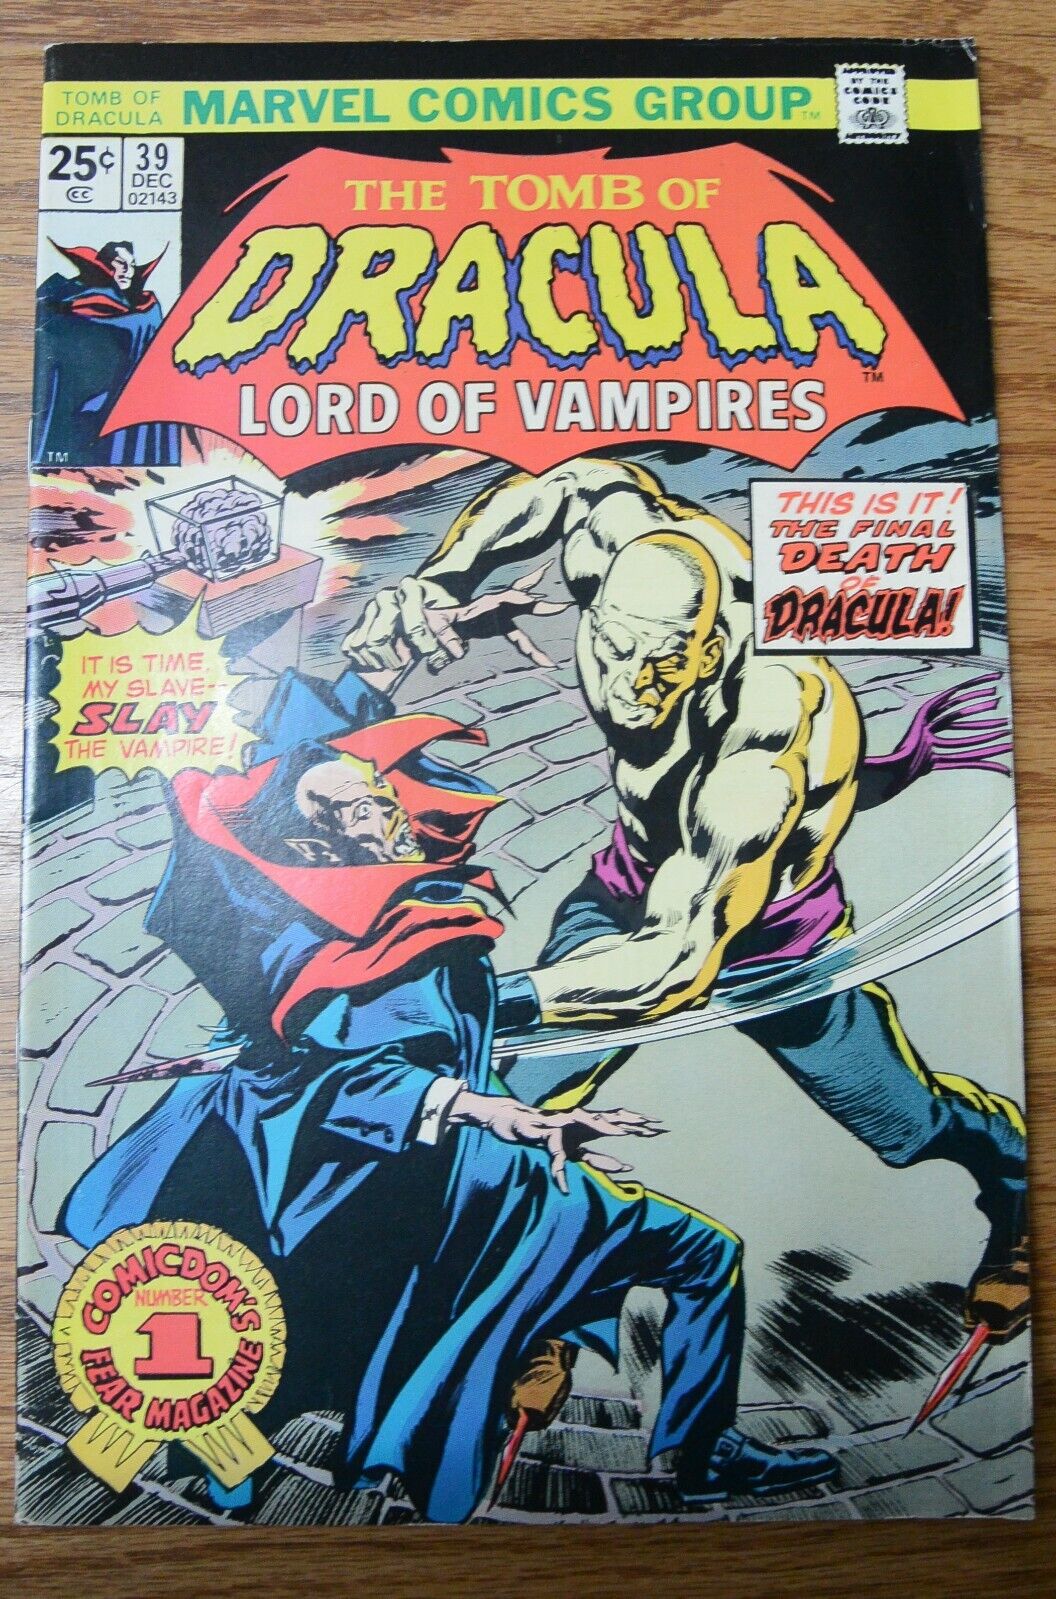 Vintage Marvel Comics The Tomb of Dracula Vol 1 No 39 December 1975 Comic Book